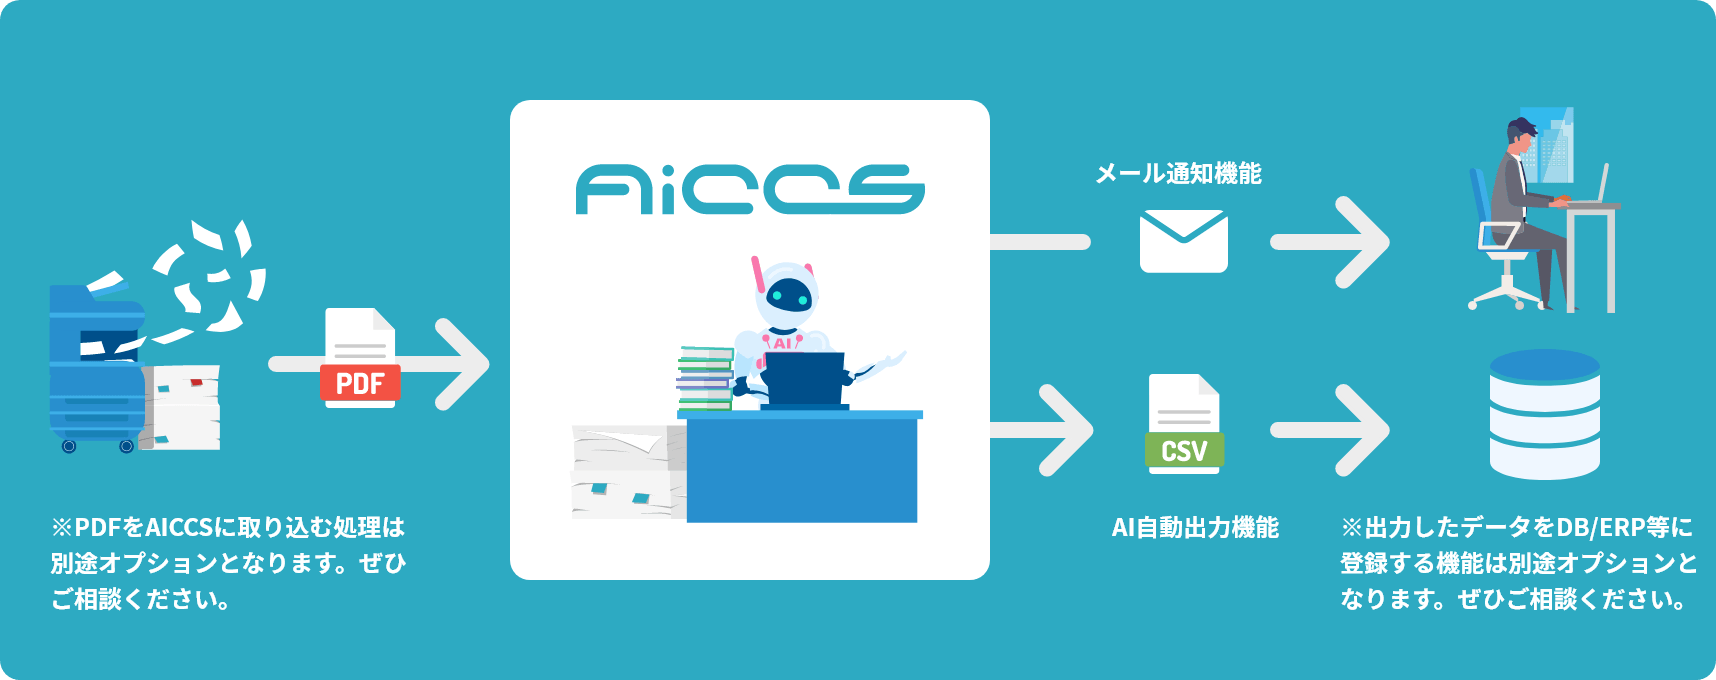 AICCSなら注文書をシームレスかつスピーディにデータ化します。